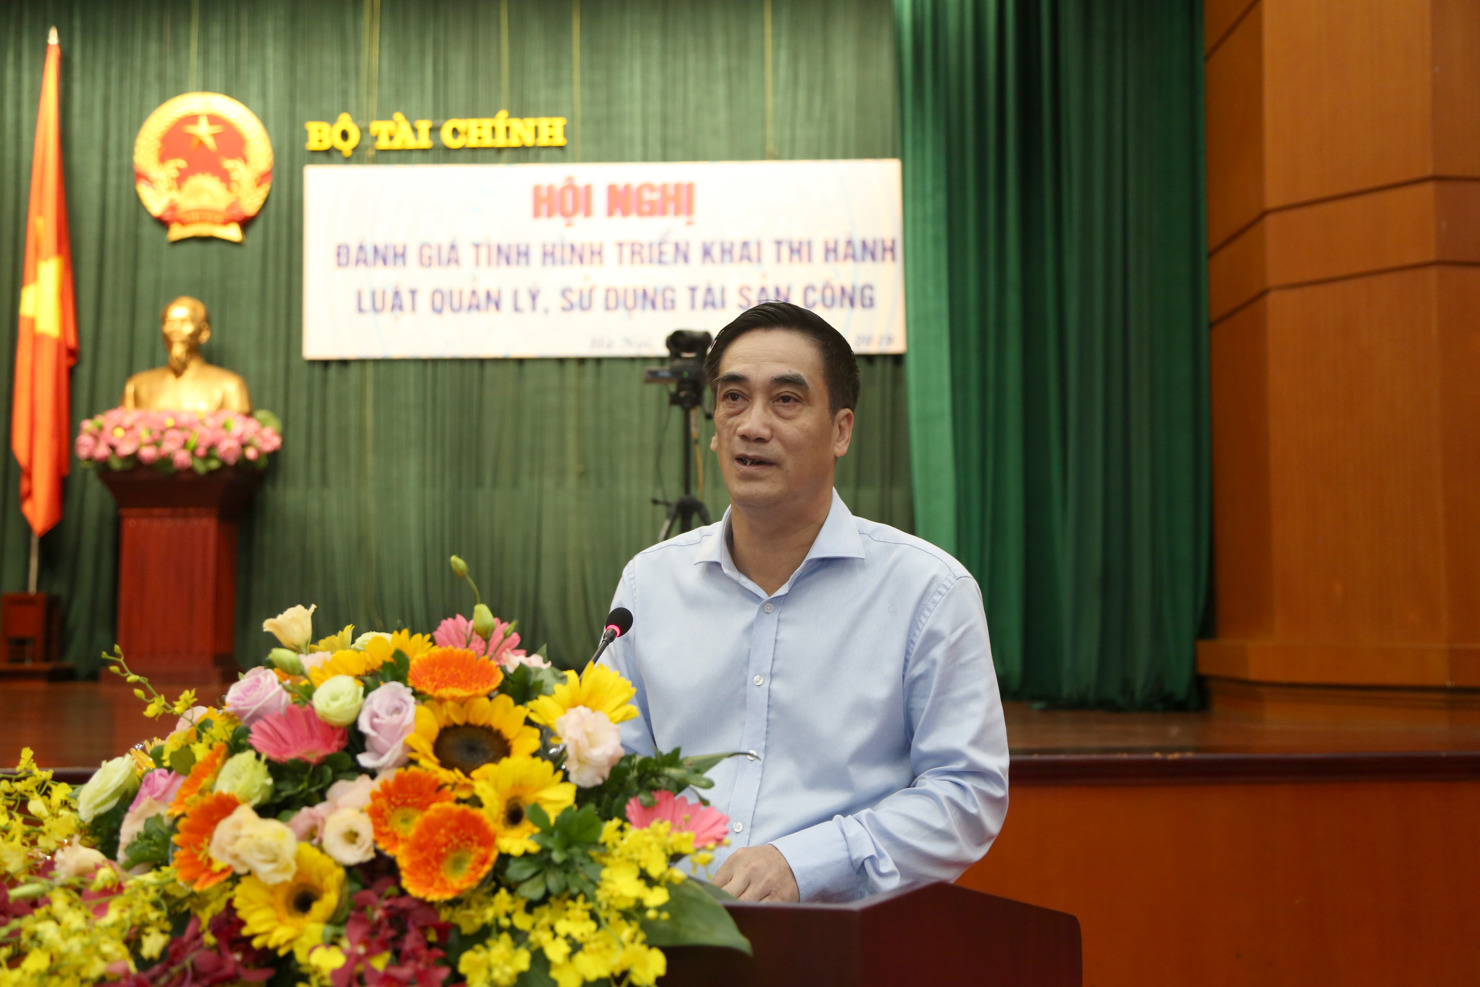 Thứ trưởng Bộ Tài chính Trần Xuân Hà phát biểu tại Hội nghị trực tuyến đánh giá tình hình triển khai thi hành Luật Quản lý, sử dụng tài sản công.